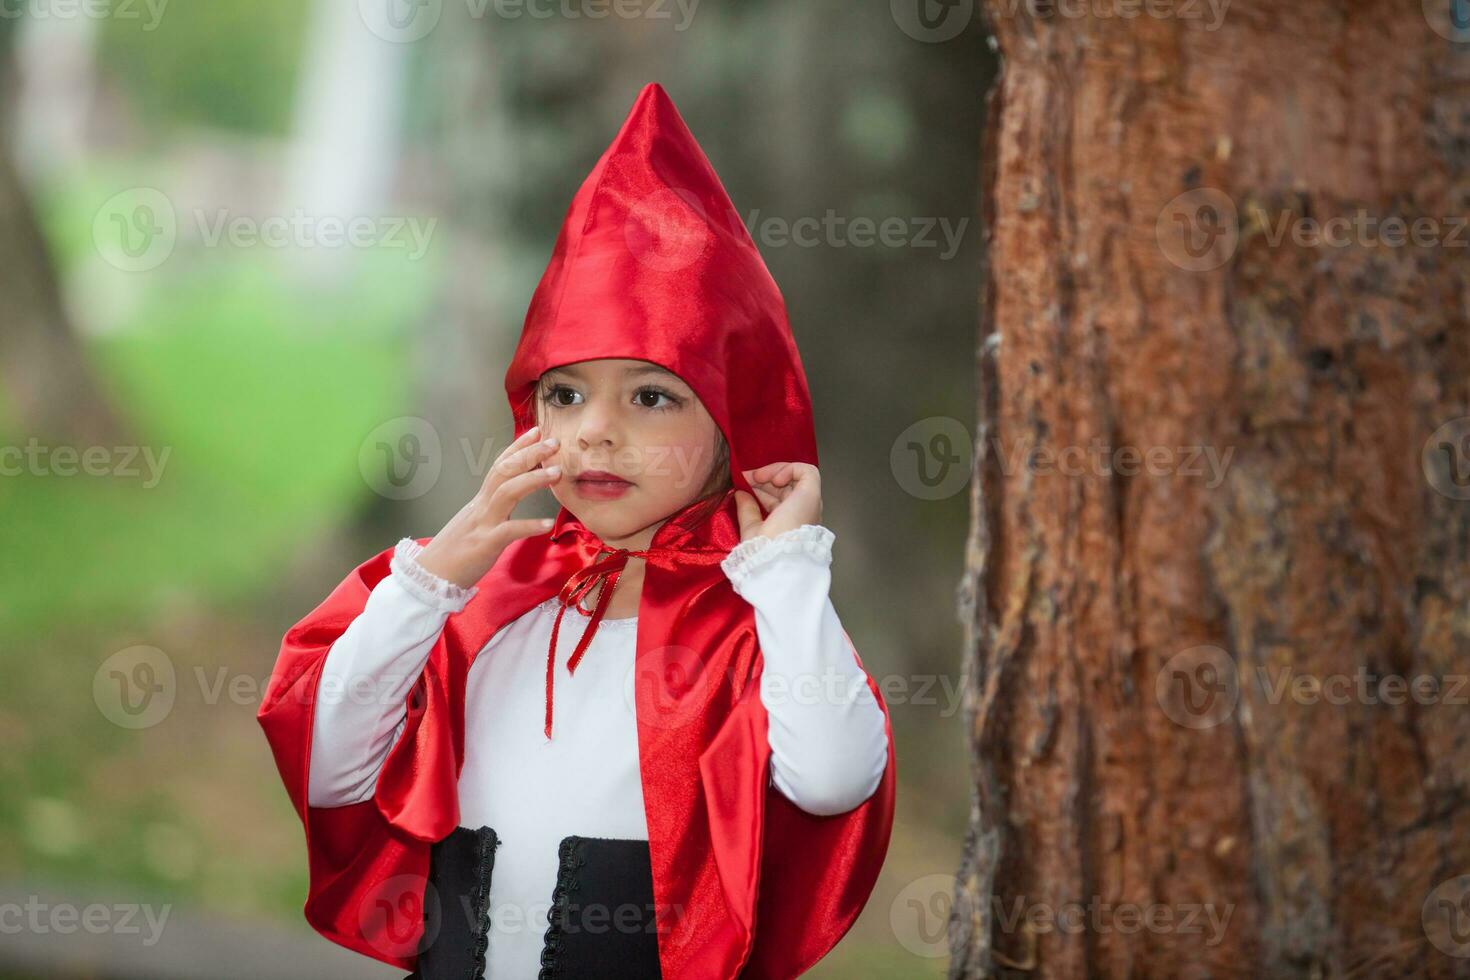 ljuv flicka bär en liten röd ridning huva kostym. verklig familj har roligt medan använder sig av kostymer av de liten röd ridning huva berättelse i halloween. foto